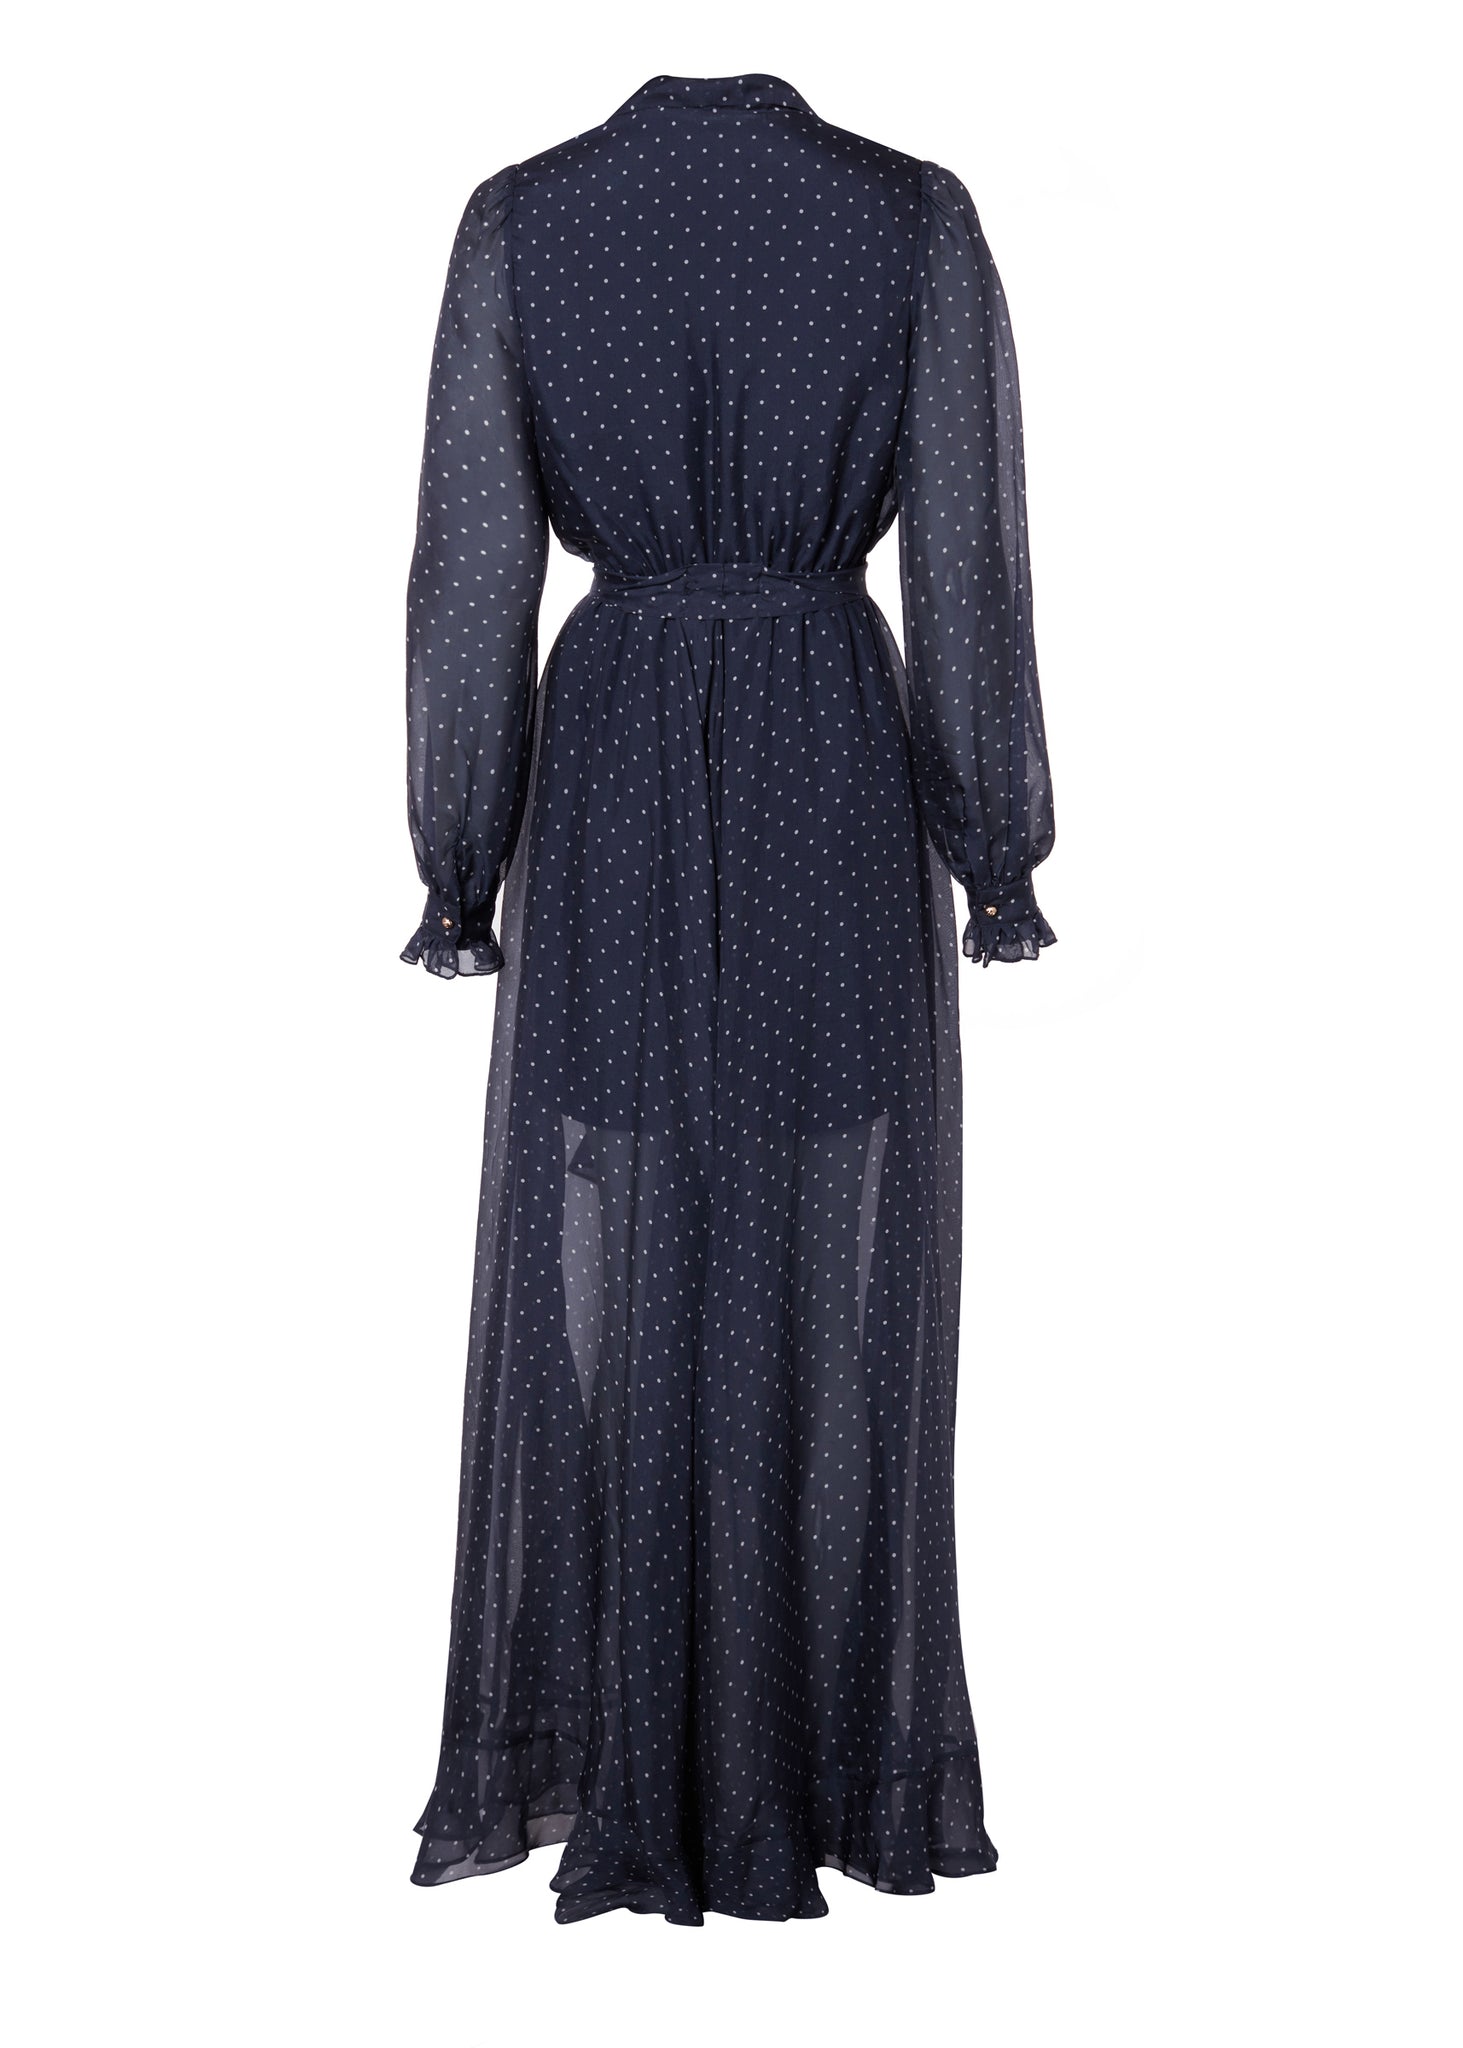 Ellisa Maxi Dress (Navy Polka Dot)